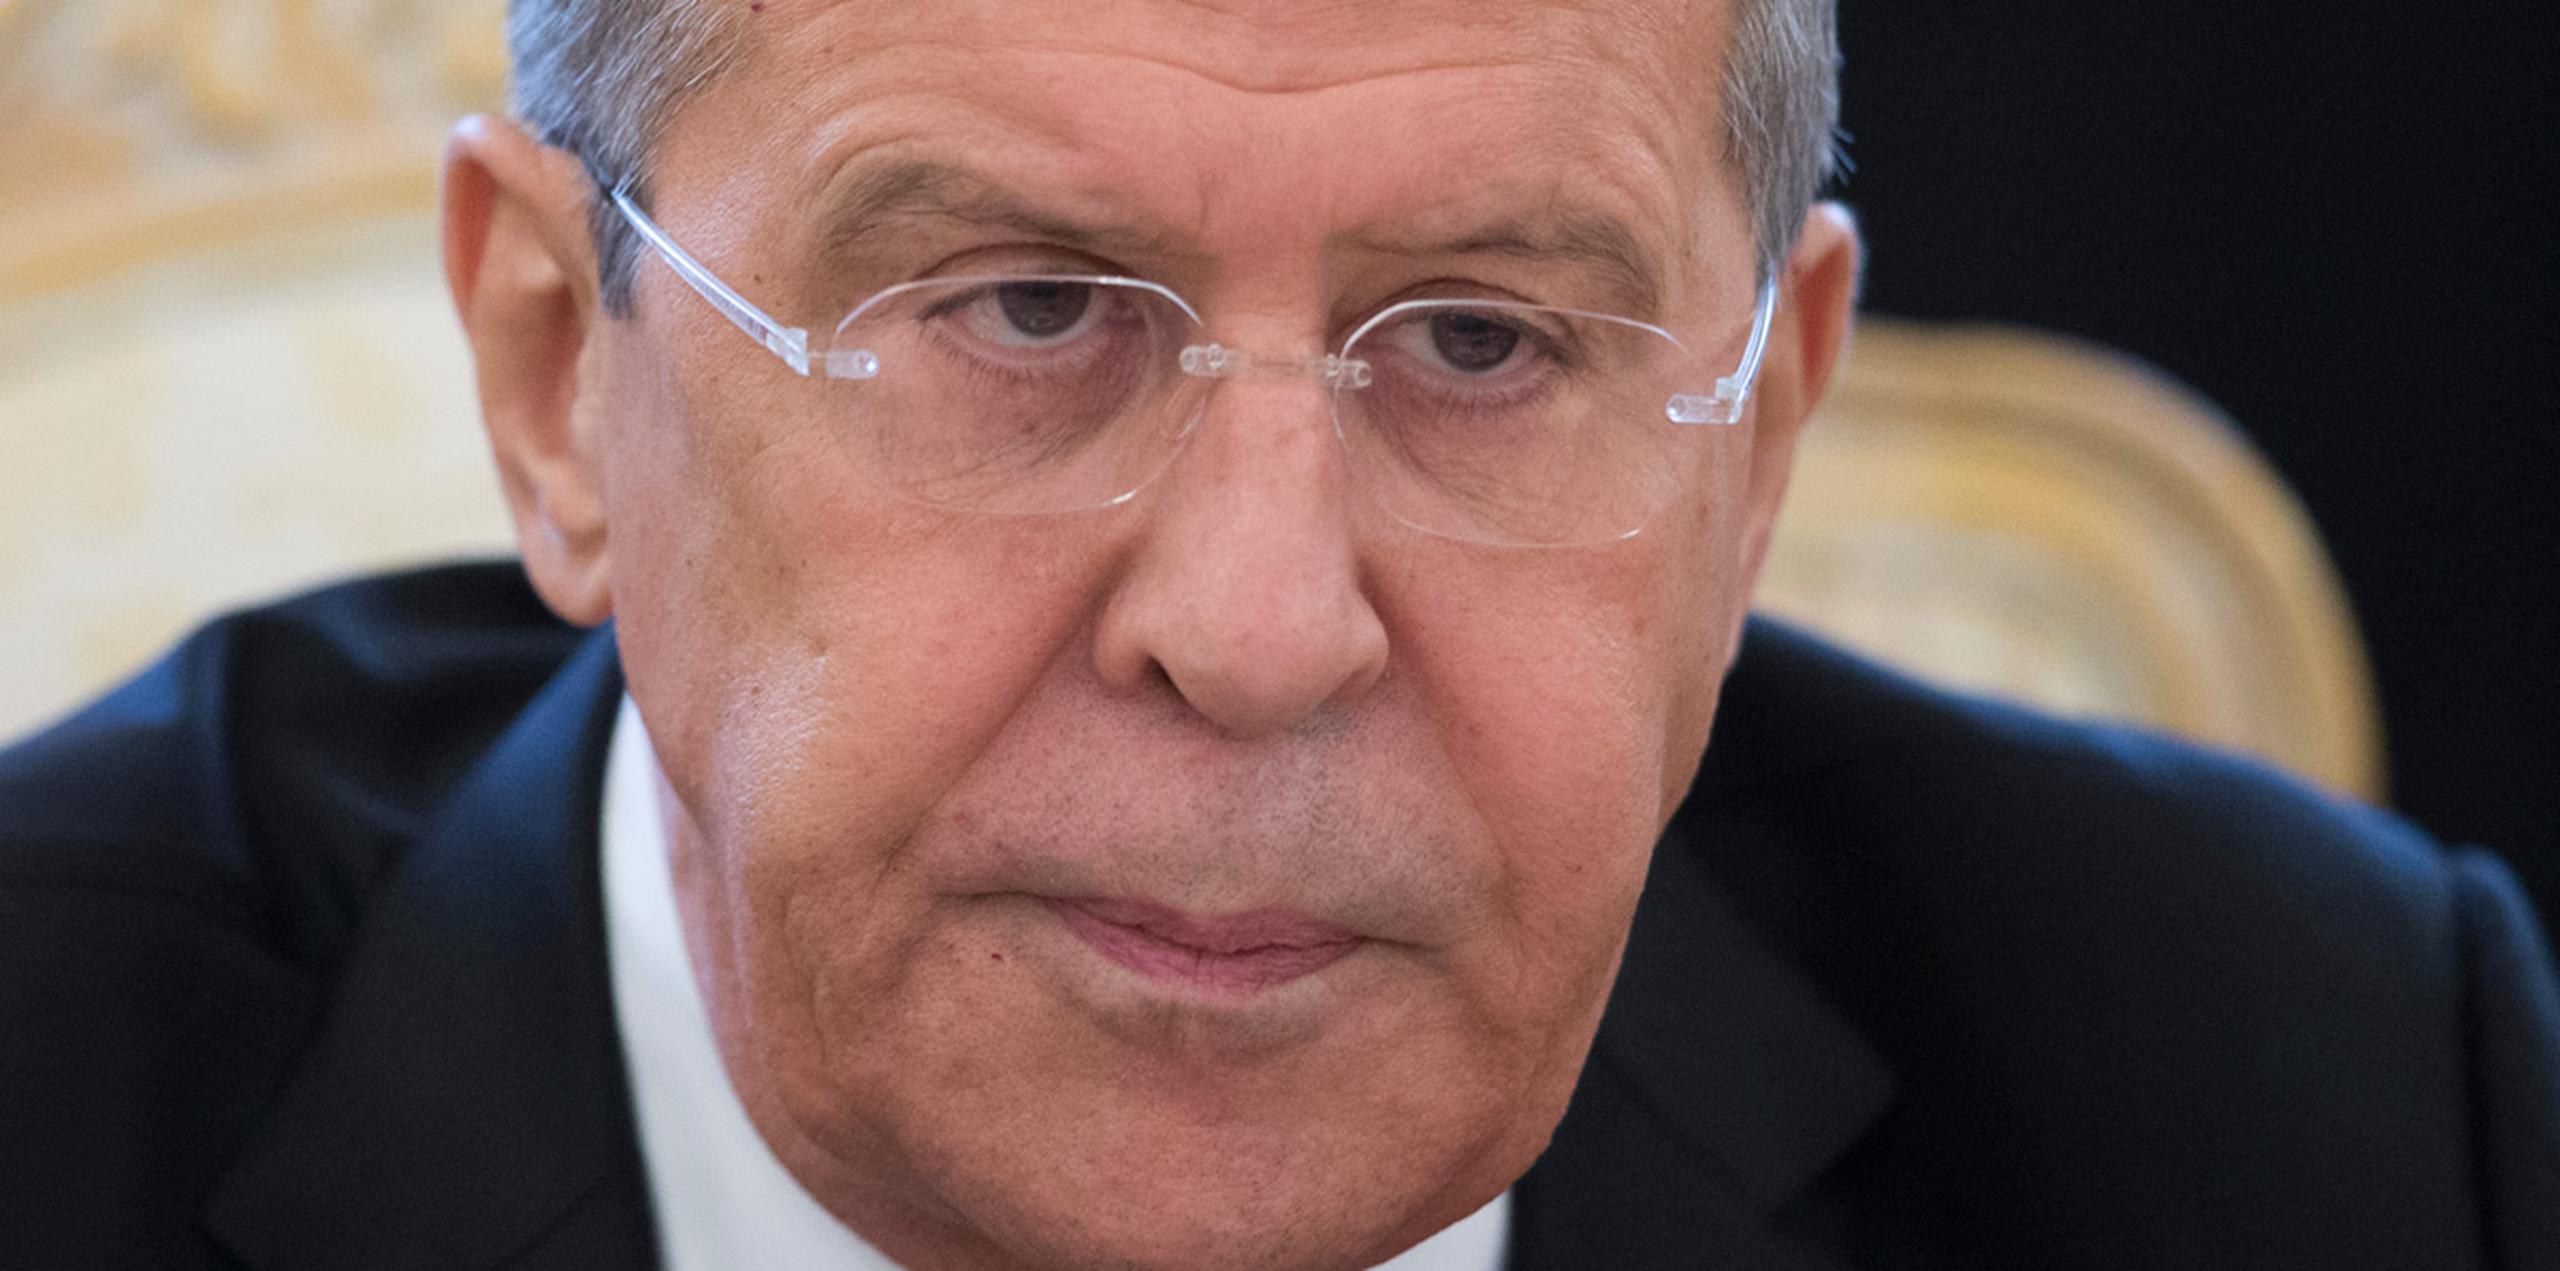 El ministro ruso de Exteriores, Sergey Lavrov, dijo que Rusia tiene muchas preguntas sobre las ideas "contradictorias" y "muy ambiguas" del gobierno de Estados Unidos. (AP)